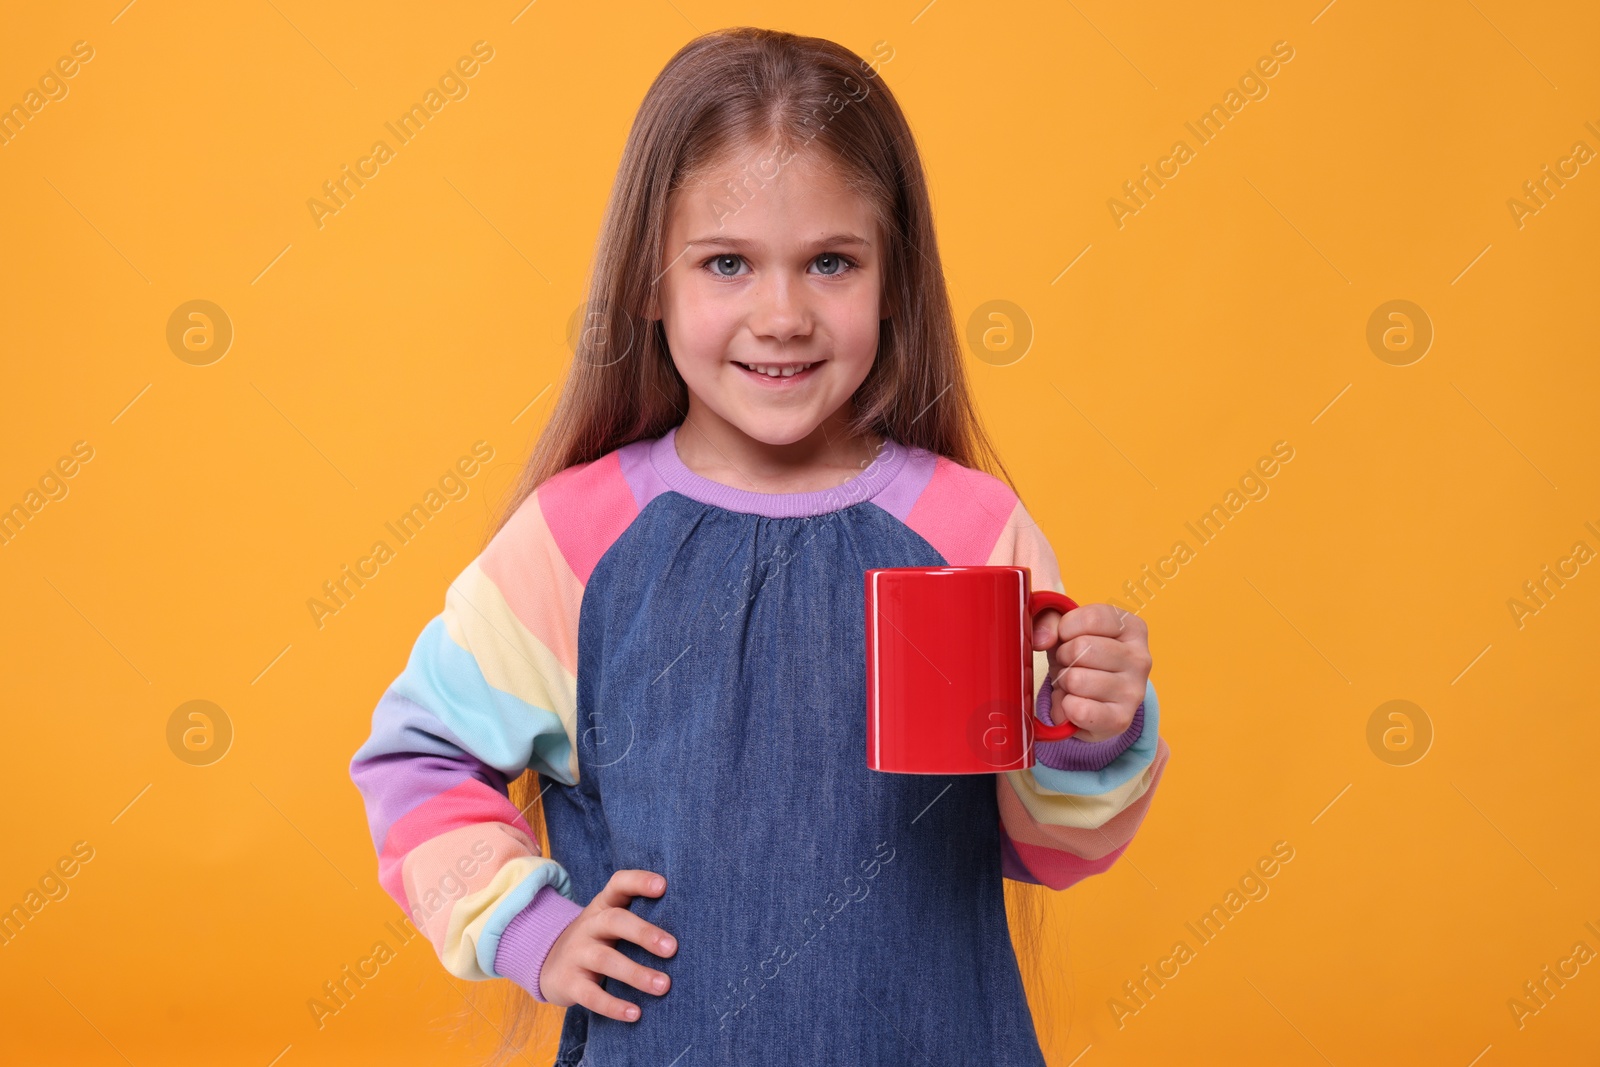 Photo of Happy girl with red ceramic mug on orange background